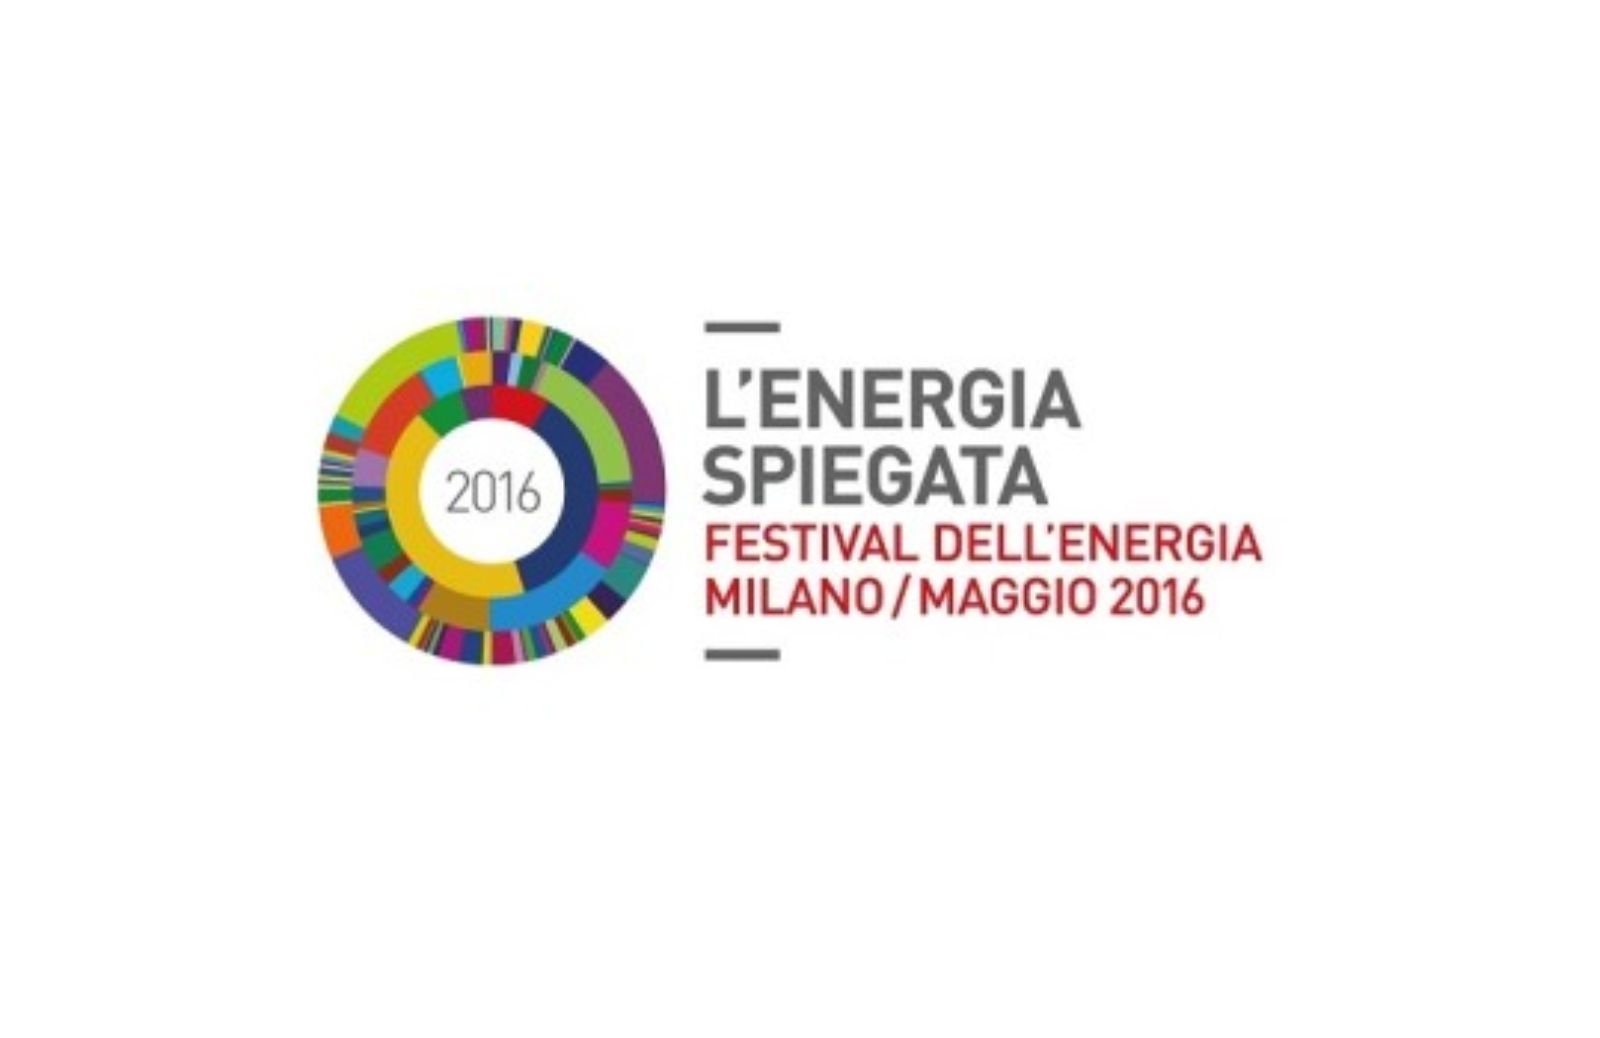 Festival dell'Energia: l'evento a Milano dal 12 al 16 maggio